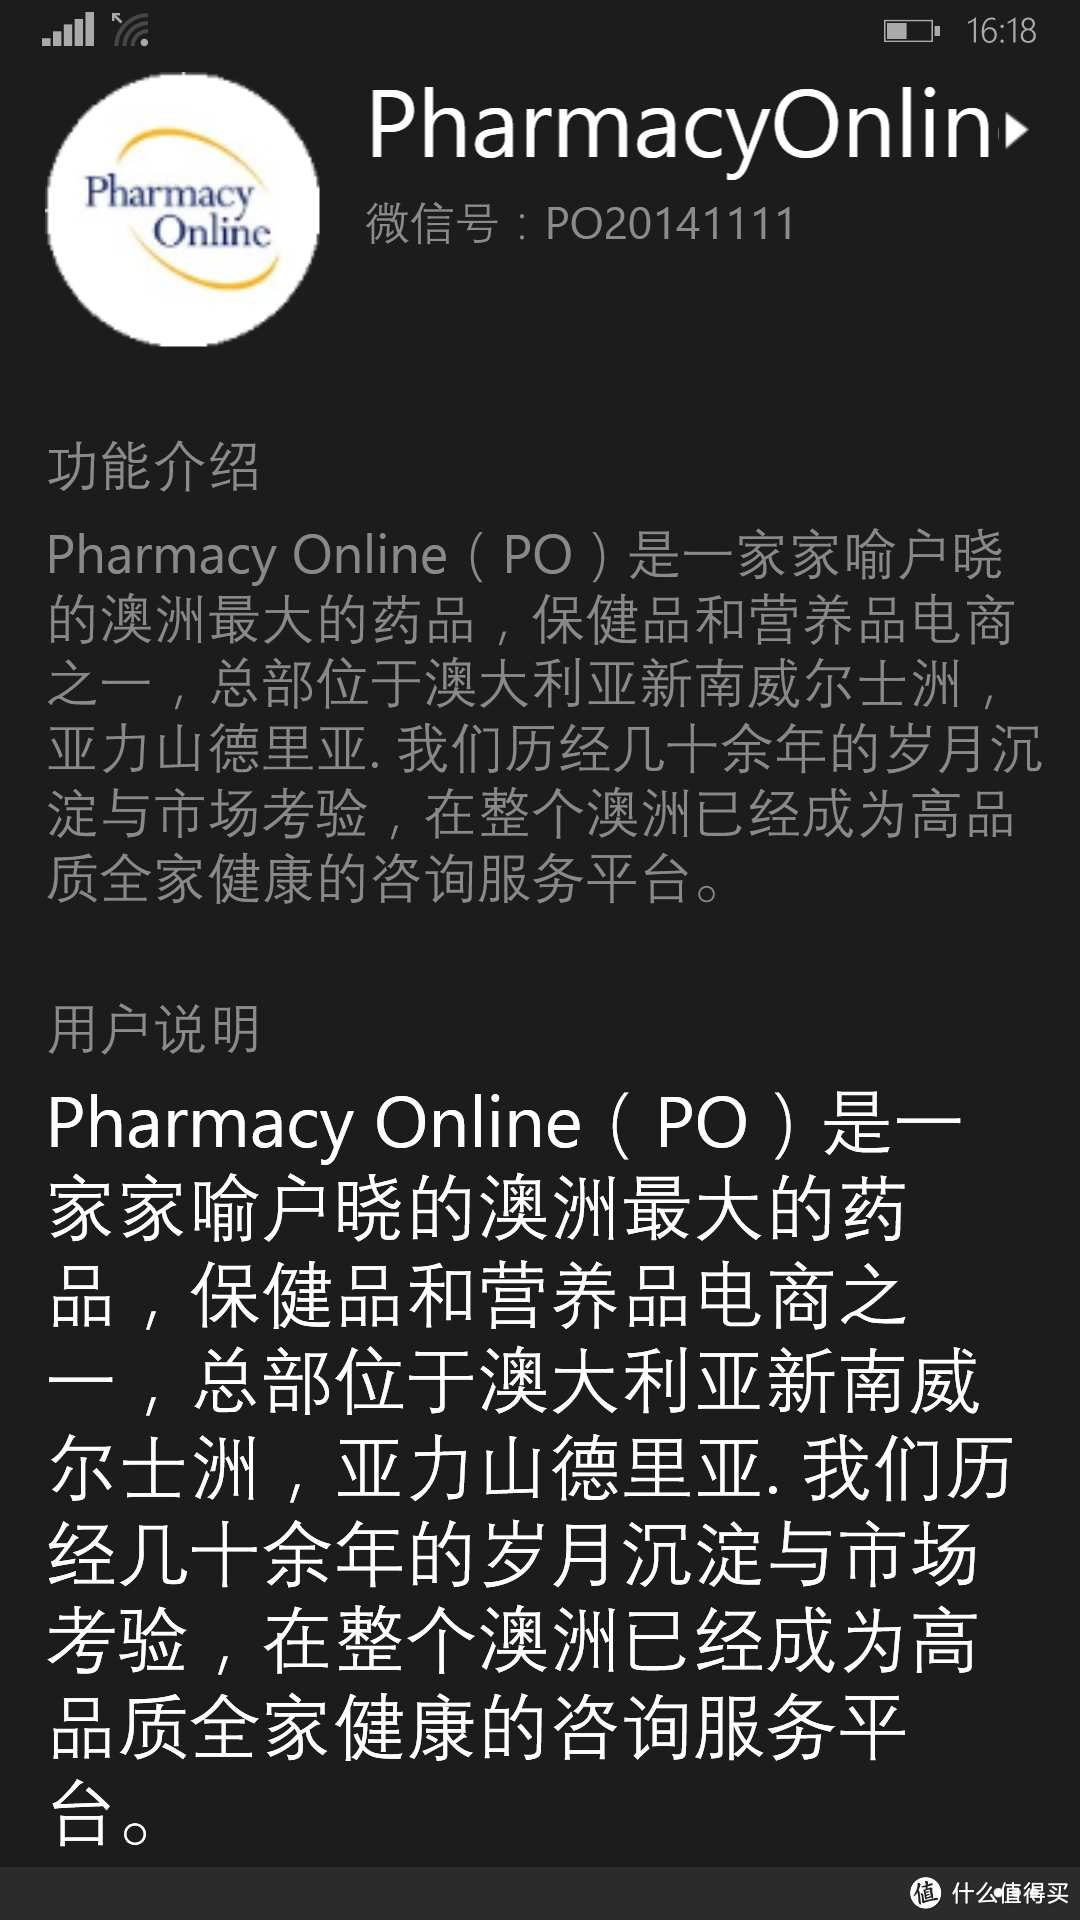 #有货自远方来# 历时27天的澳淘 — Pharmacy Online 购物体验